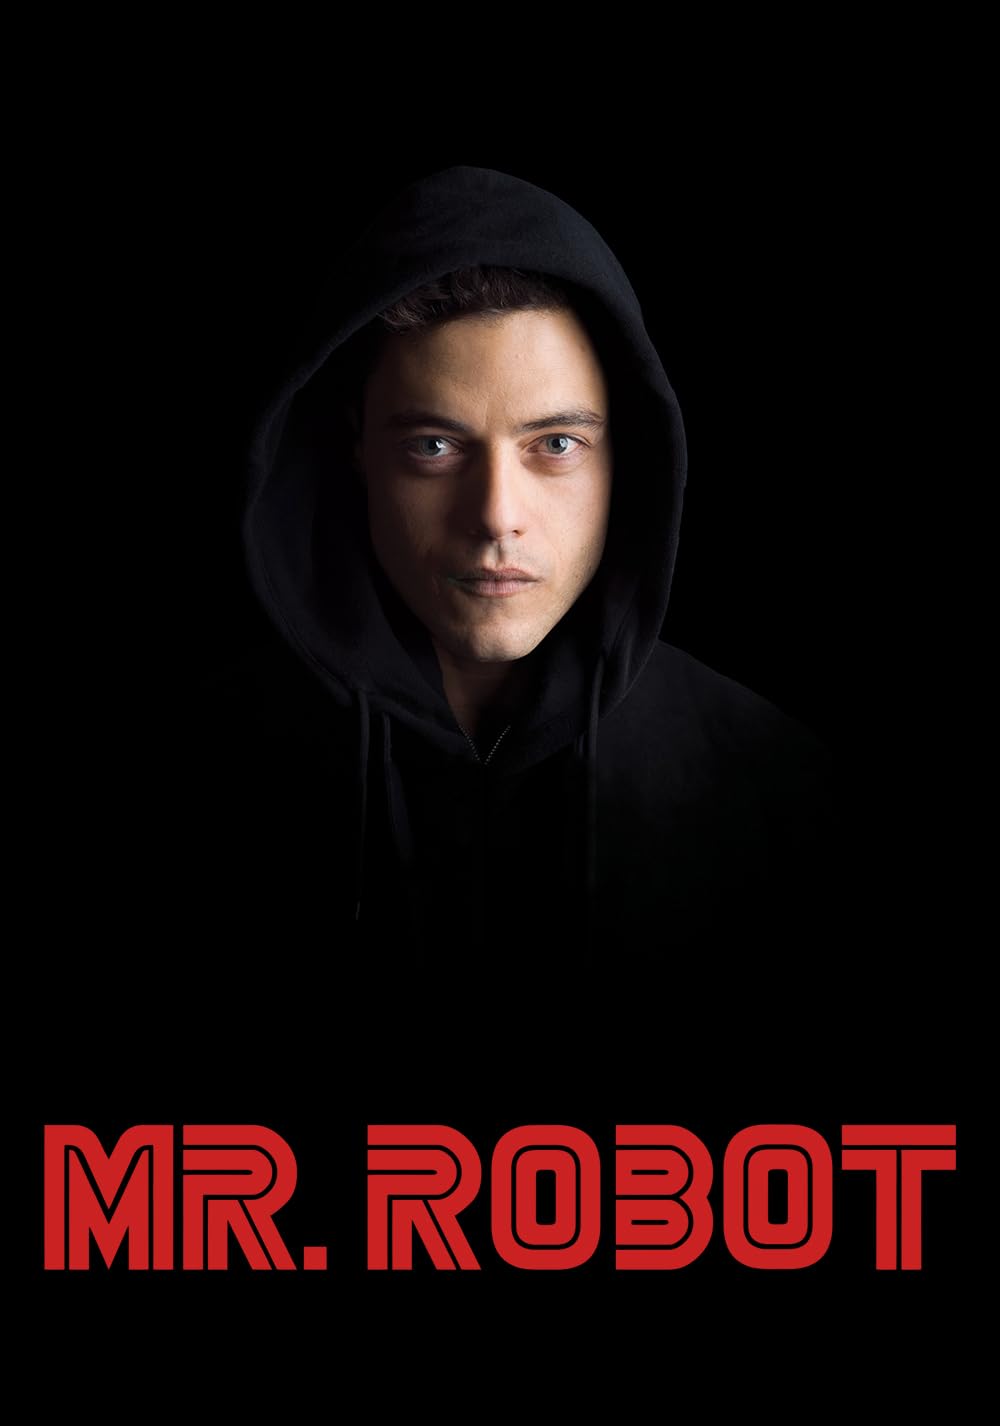 Mr. Robot Season 3 DVD Release Date | Redbox, Netflix ...